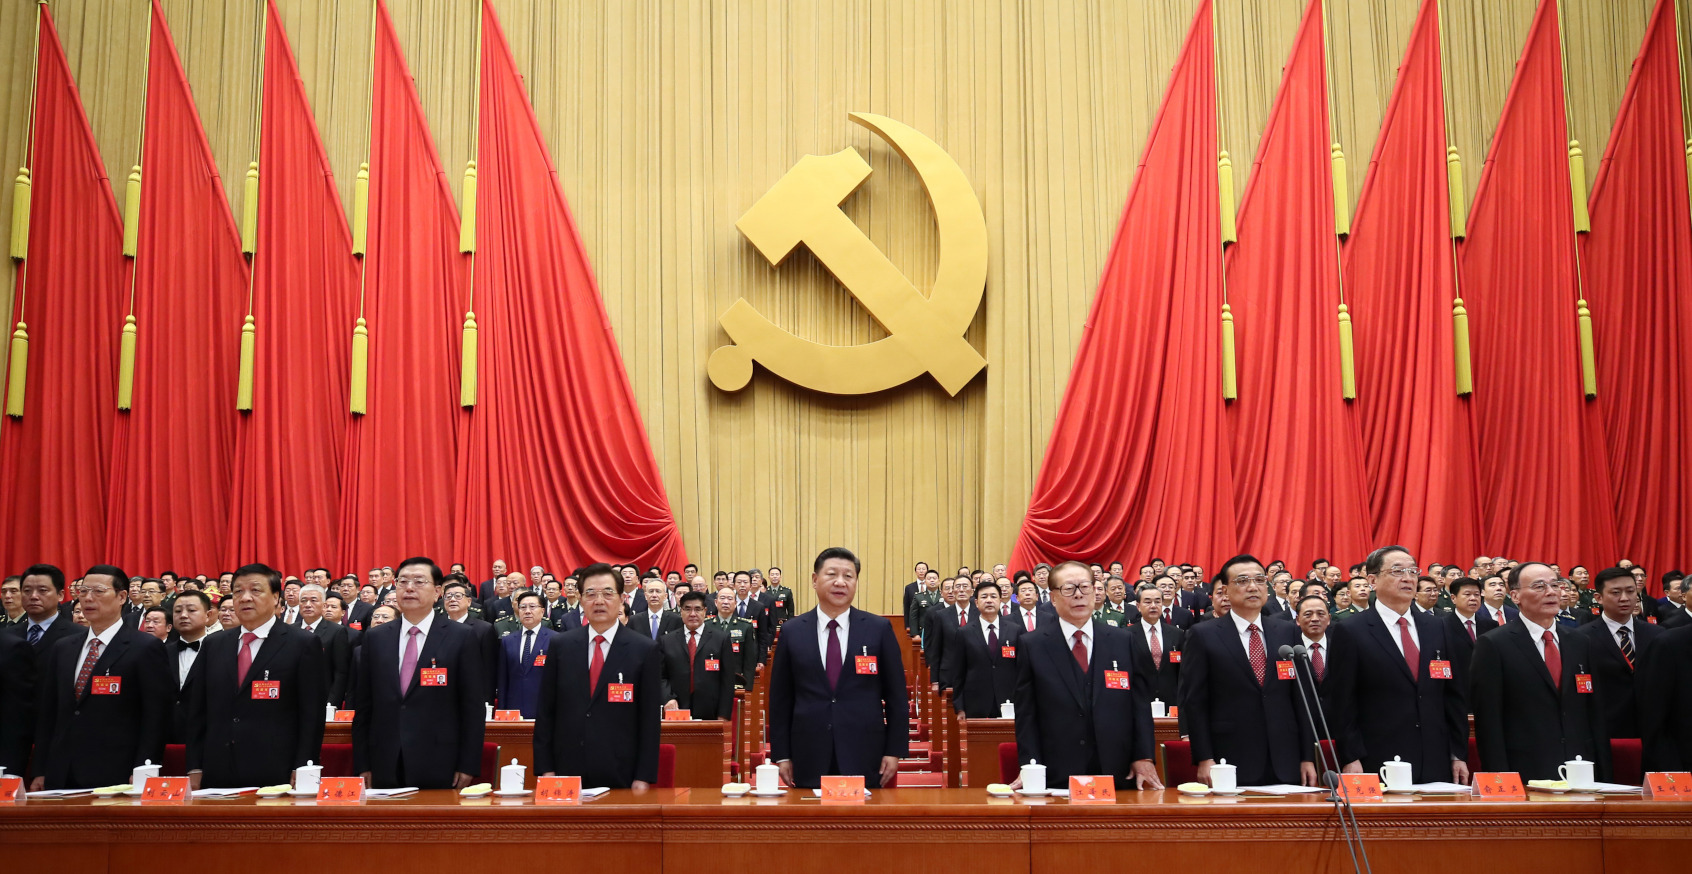 REUNION/WEBINAIRE A L'HEURE DE LA CHINE - Actualité des dirigeants chinois : quelles nouvelles orientations politiques et économiques en Chine suite au dernier plenum du Congrès du PCC ? - Jeudi 25 novembre 2021